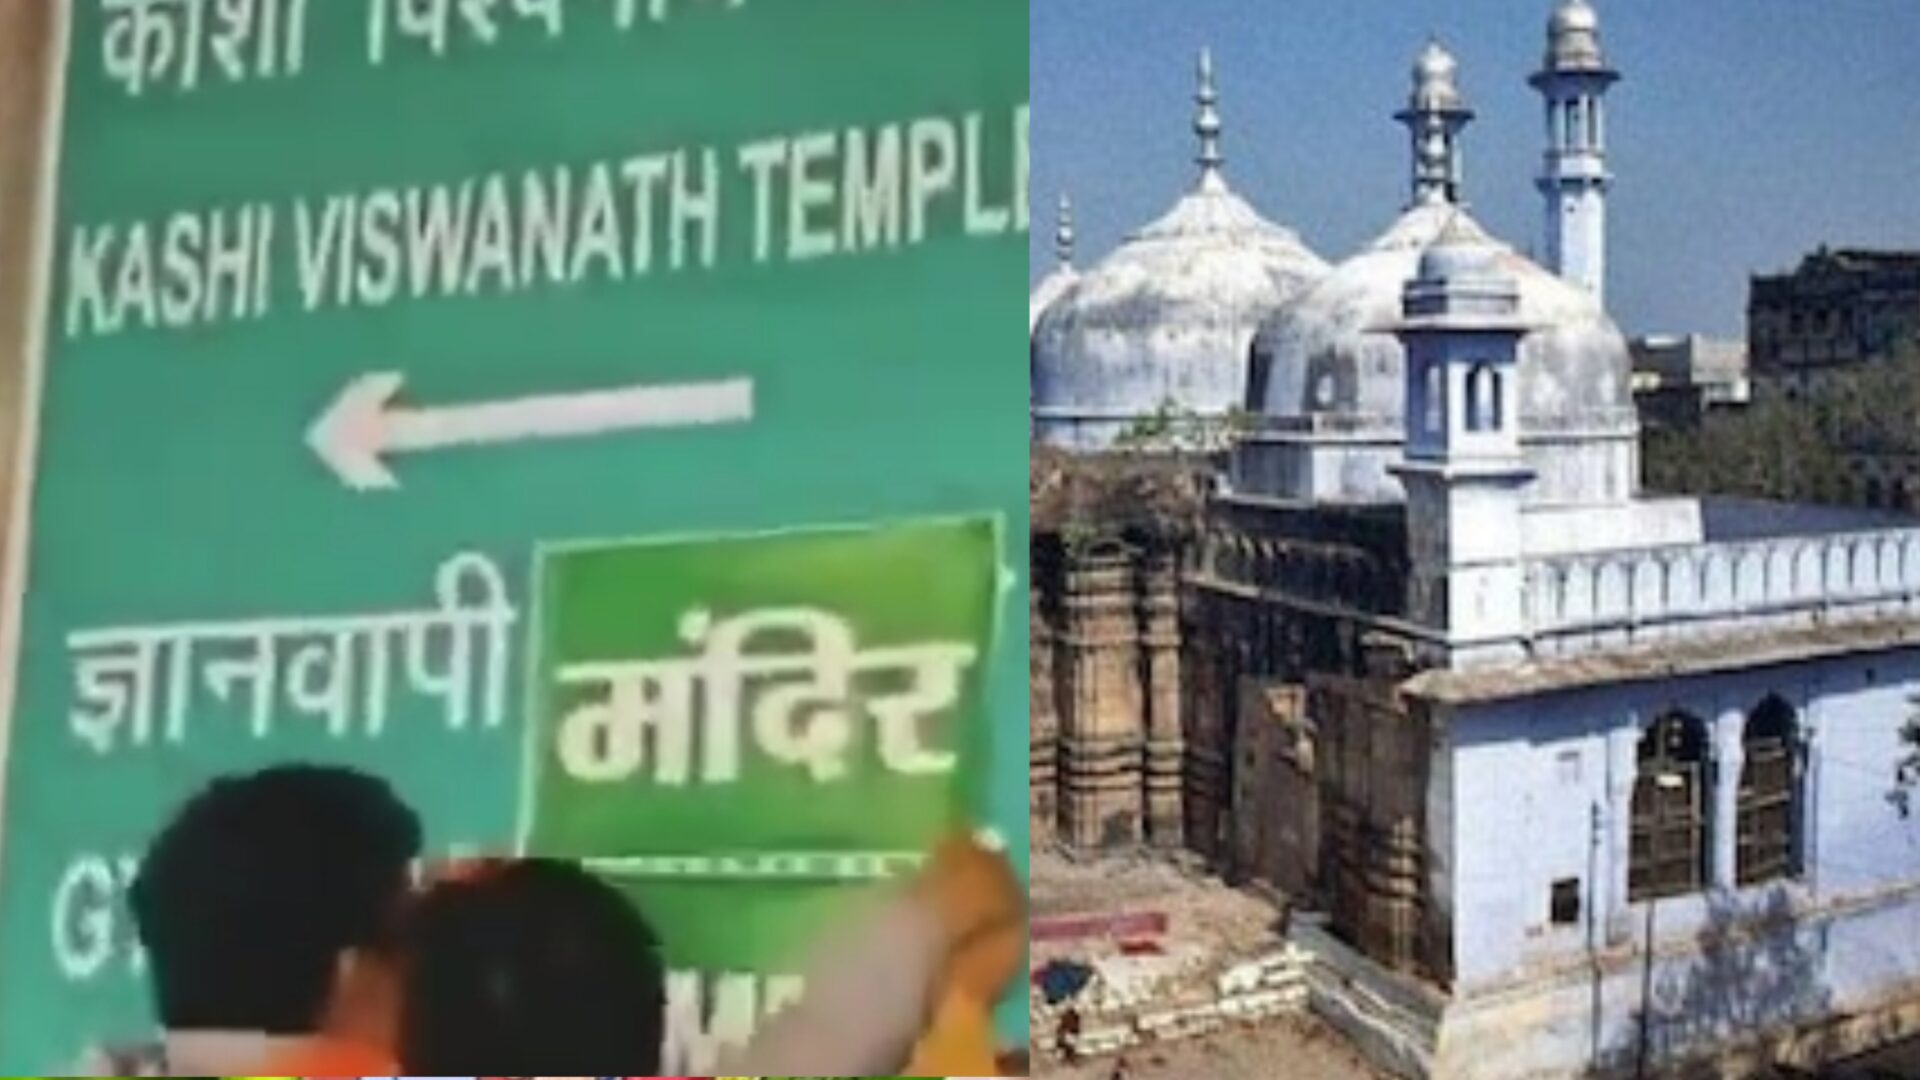 ज्ञानवापी मस्जिद के साइन बोर्ड पर लगा मंदिर का पोस्टर